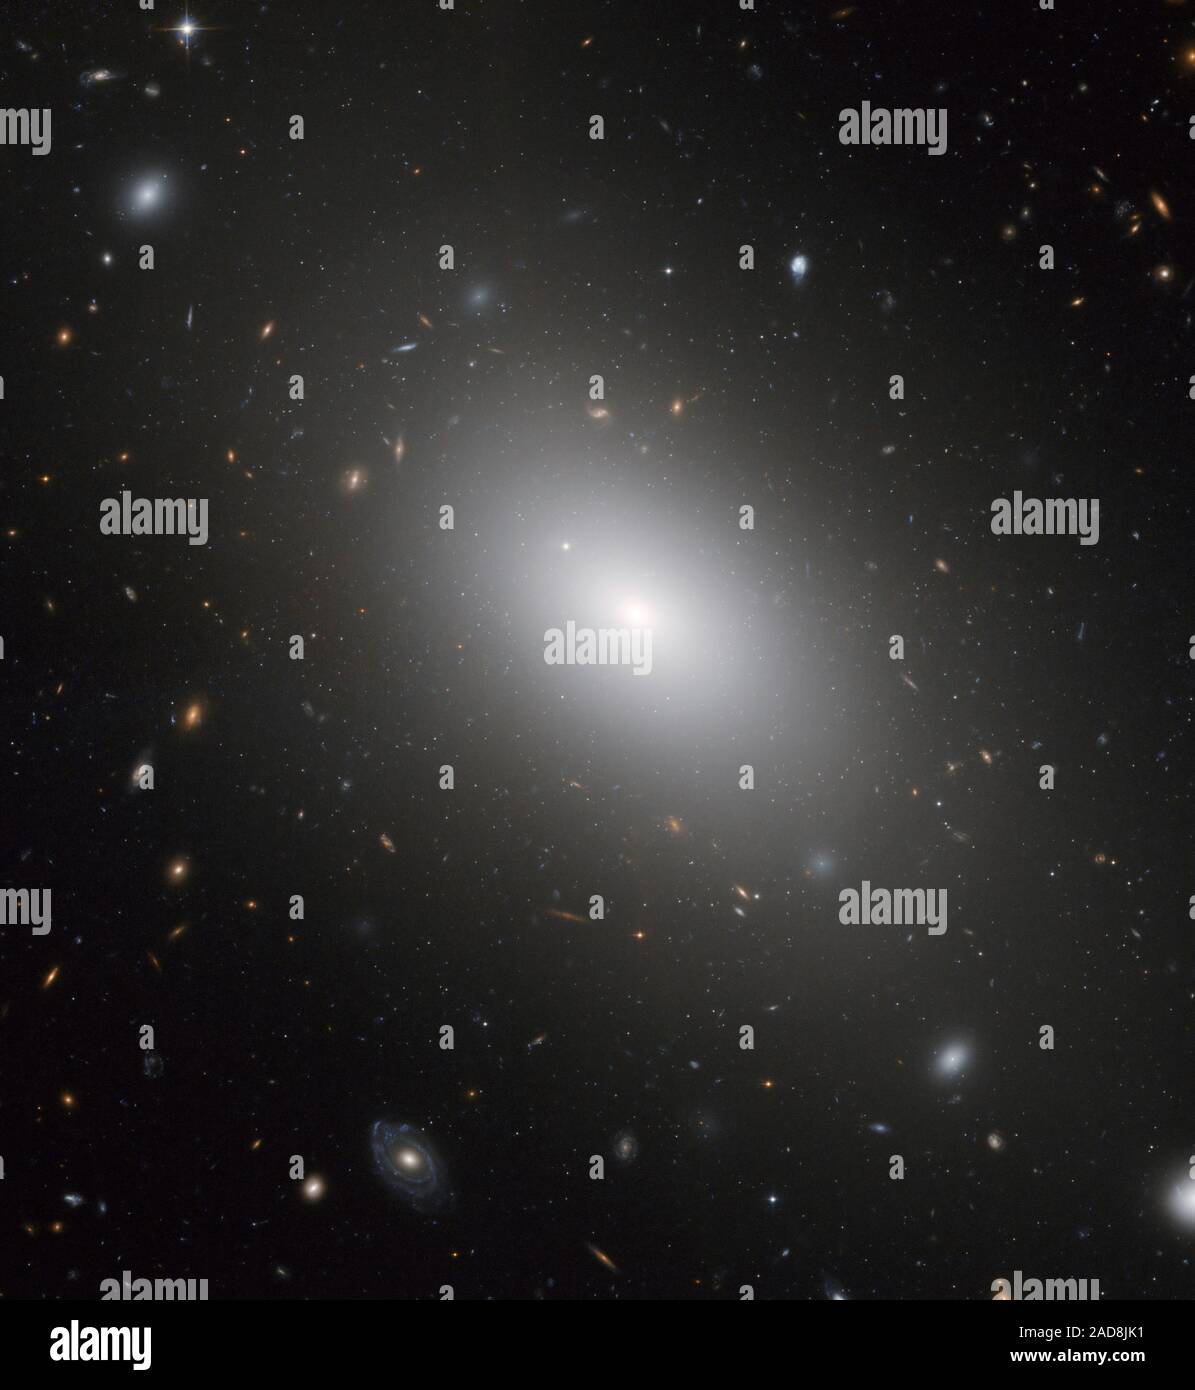 La galassia ellittica NGC 1132 rivela il risultato finale di ciò che potrebbe essere stato un gruppo di galassie che fuse insieme nel recente passato. Un'altra possibilità è che la galassia formata in isolamento come un "lupo solitario" in un universo risplendente con gruppi di Galaxy e cluster. NGC 1132 è ribattezzato 'fossile gruppo" perché contiene enormi concentrazioni di materia oscura, paragonabile alla materia oscura trovata in un intero gruppo di galassie. NGC 1132 ha anche un forte X-ray glow da una abbondante quantità di gas caldo che è normalmente trovata solo in gruppi di Galaxy. In luce visibile, tuttavia, appare come un Foto Stock